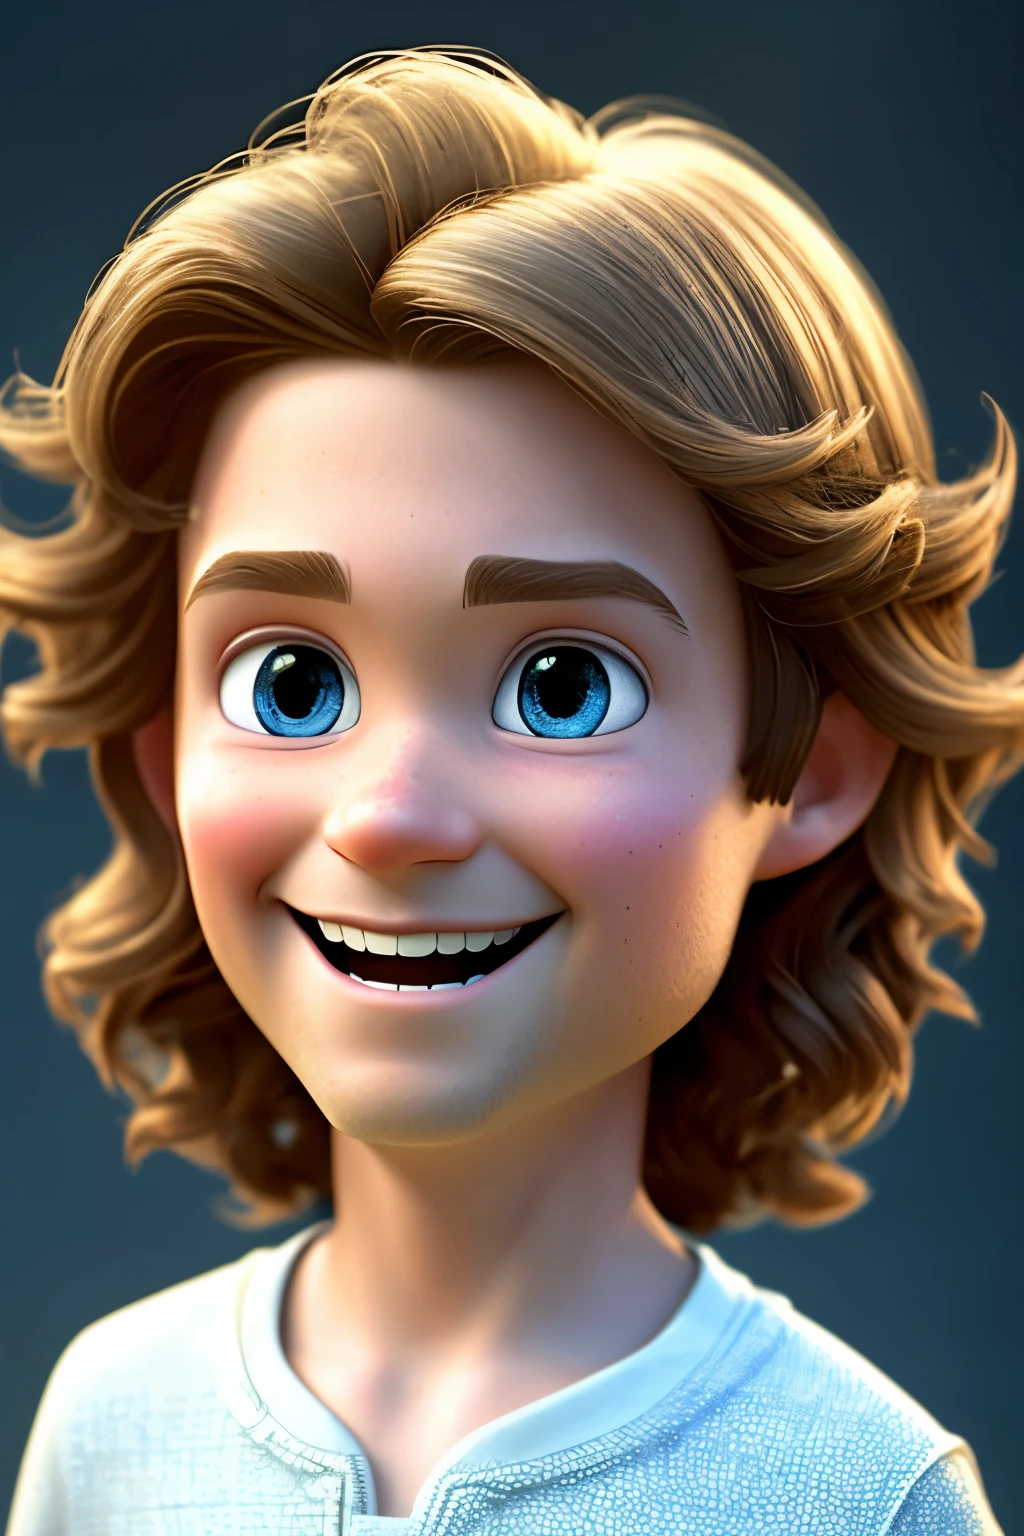 Eine freudige Darstellung von Jesus Christus als Junge mit einem animierten, zu Berge stehende Frisur, Vor einem makellos weißen Hintergrund, Tom-ähnlicher Charme, Animation im Pixar-Stil, hochauflösendes 3D-Rendering, Aufwendig detailliertes Gesicht, und asymmetrische Komposition, 16k Auflösung.